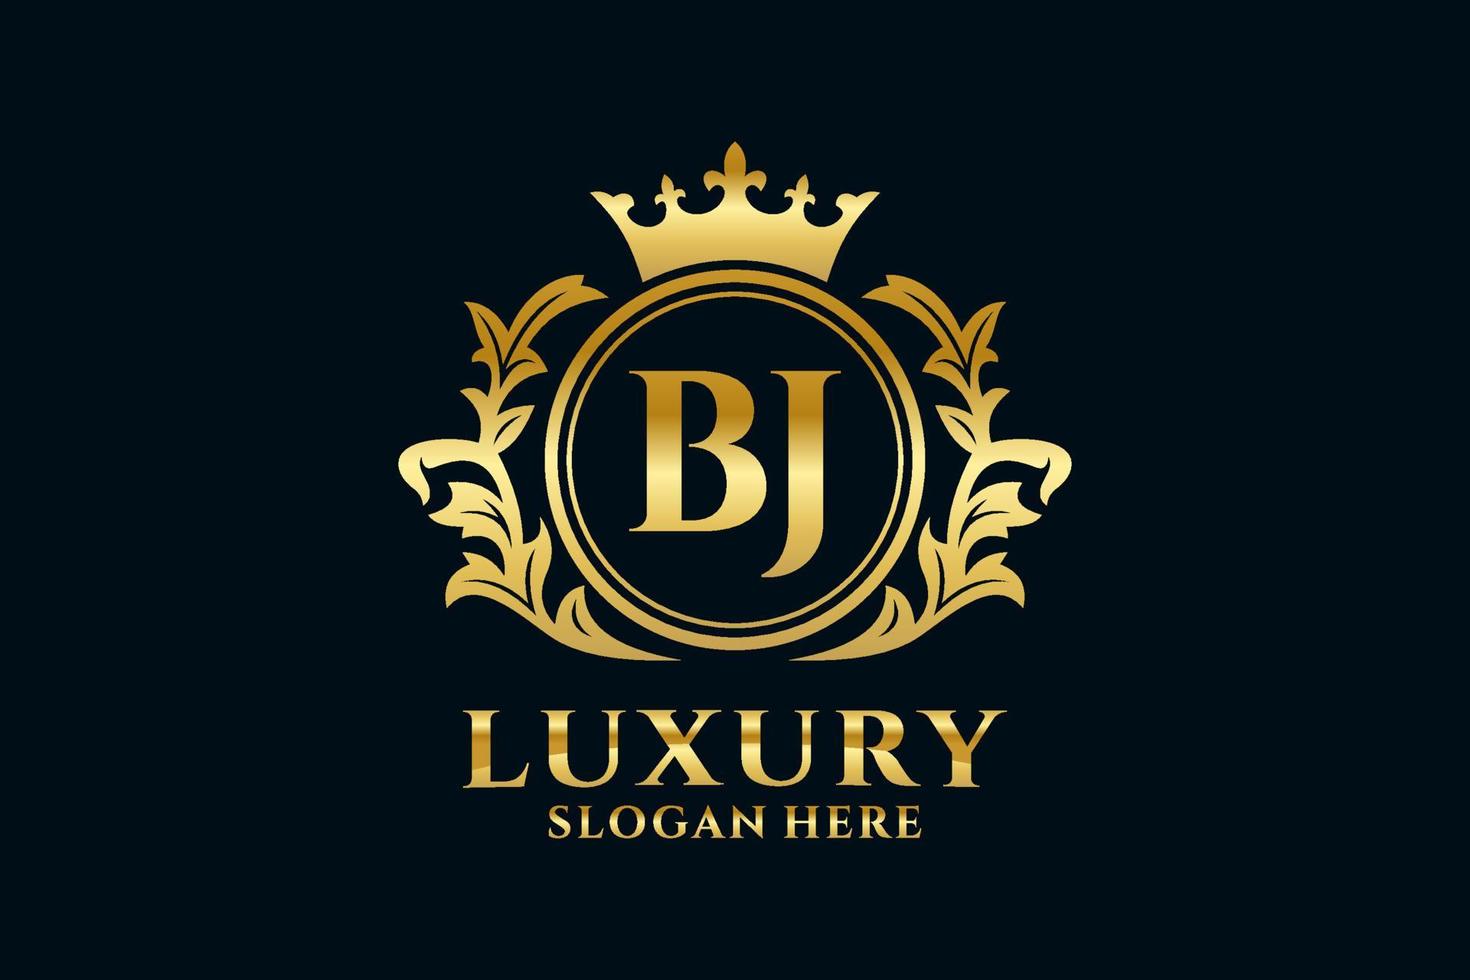 modelo de logotipo de luxo real inicial bj letter em arte vetorial para projetos de marca de luxo e outras ilustrações vetoriais. vetor